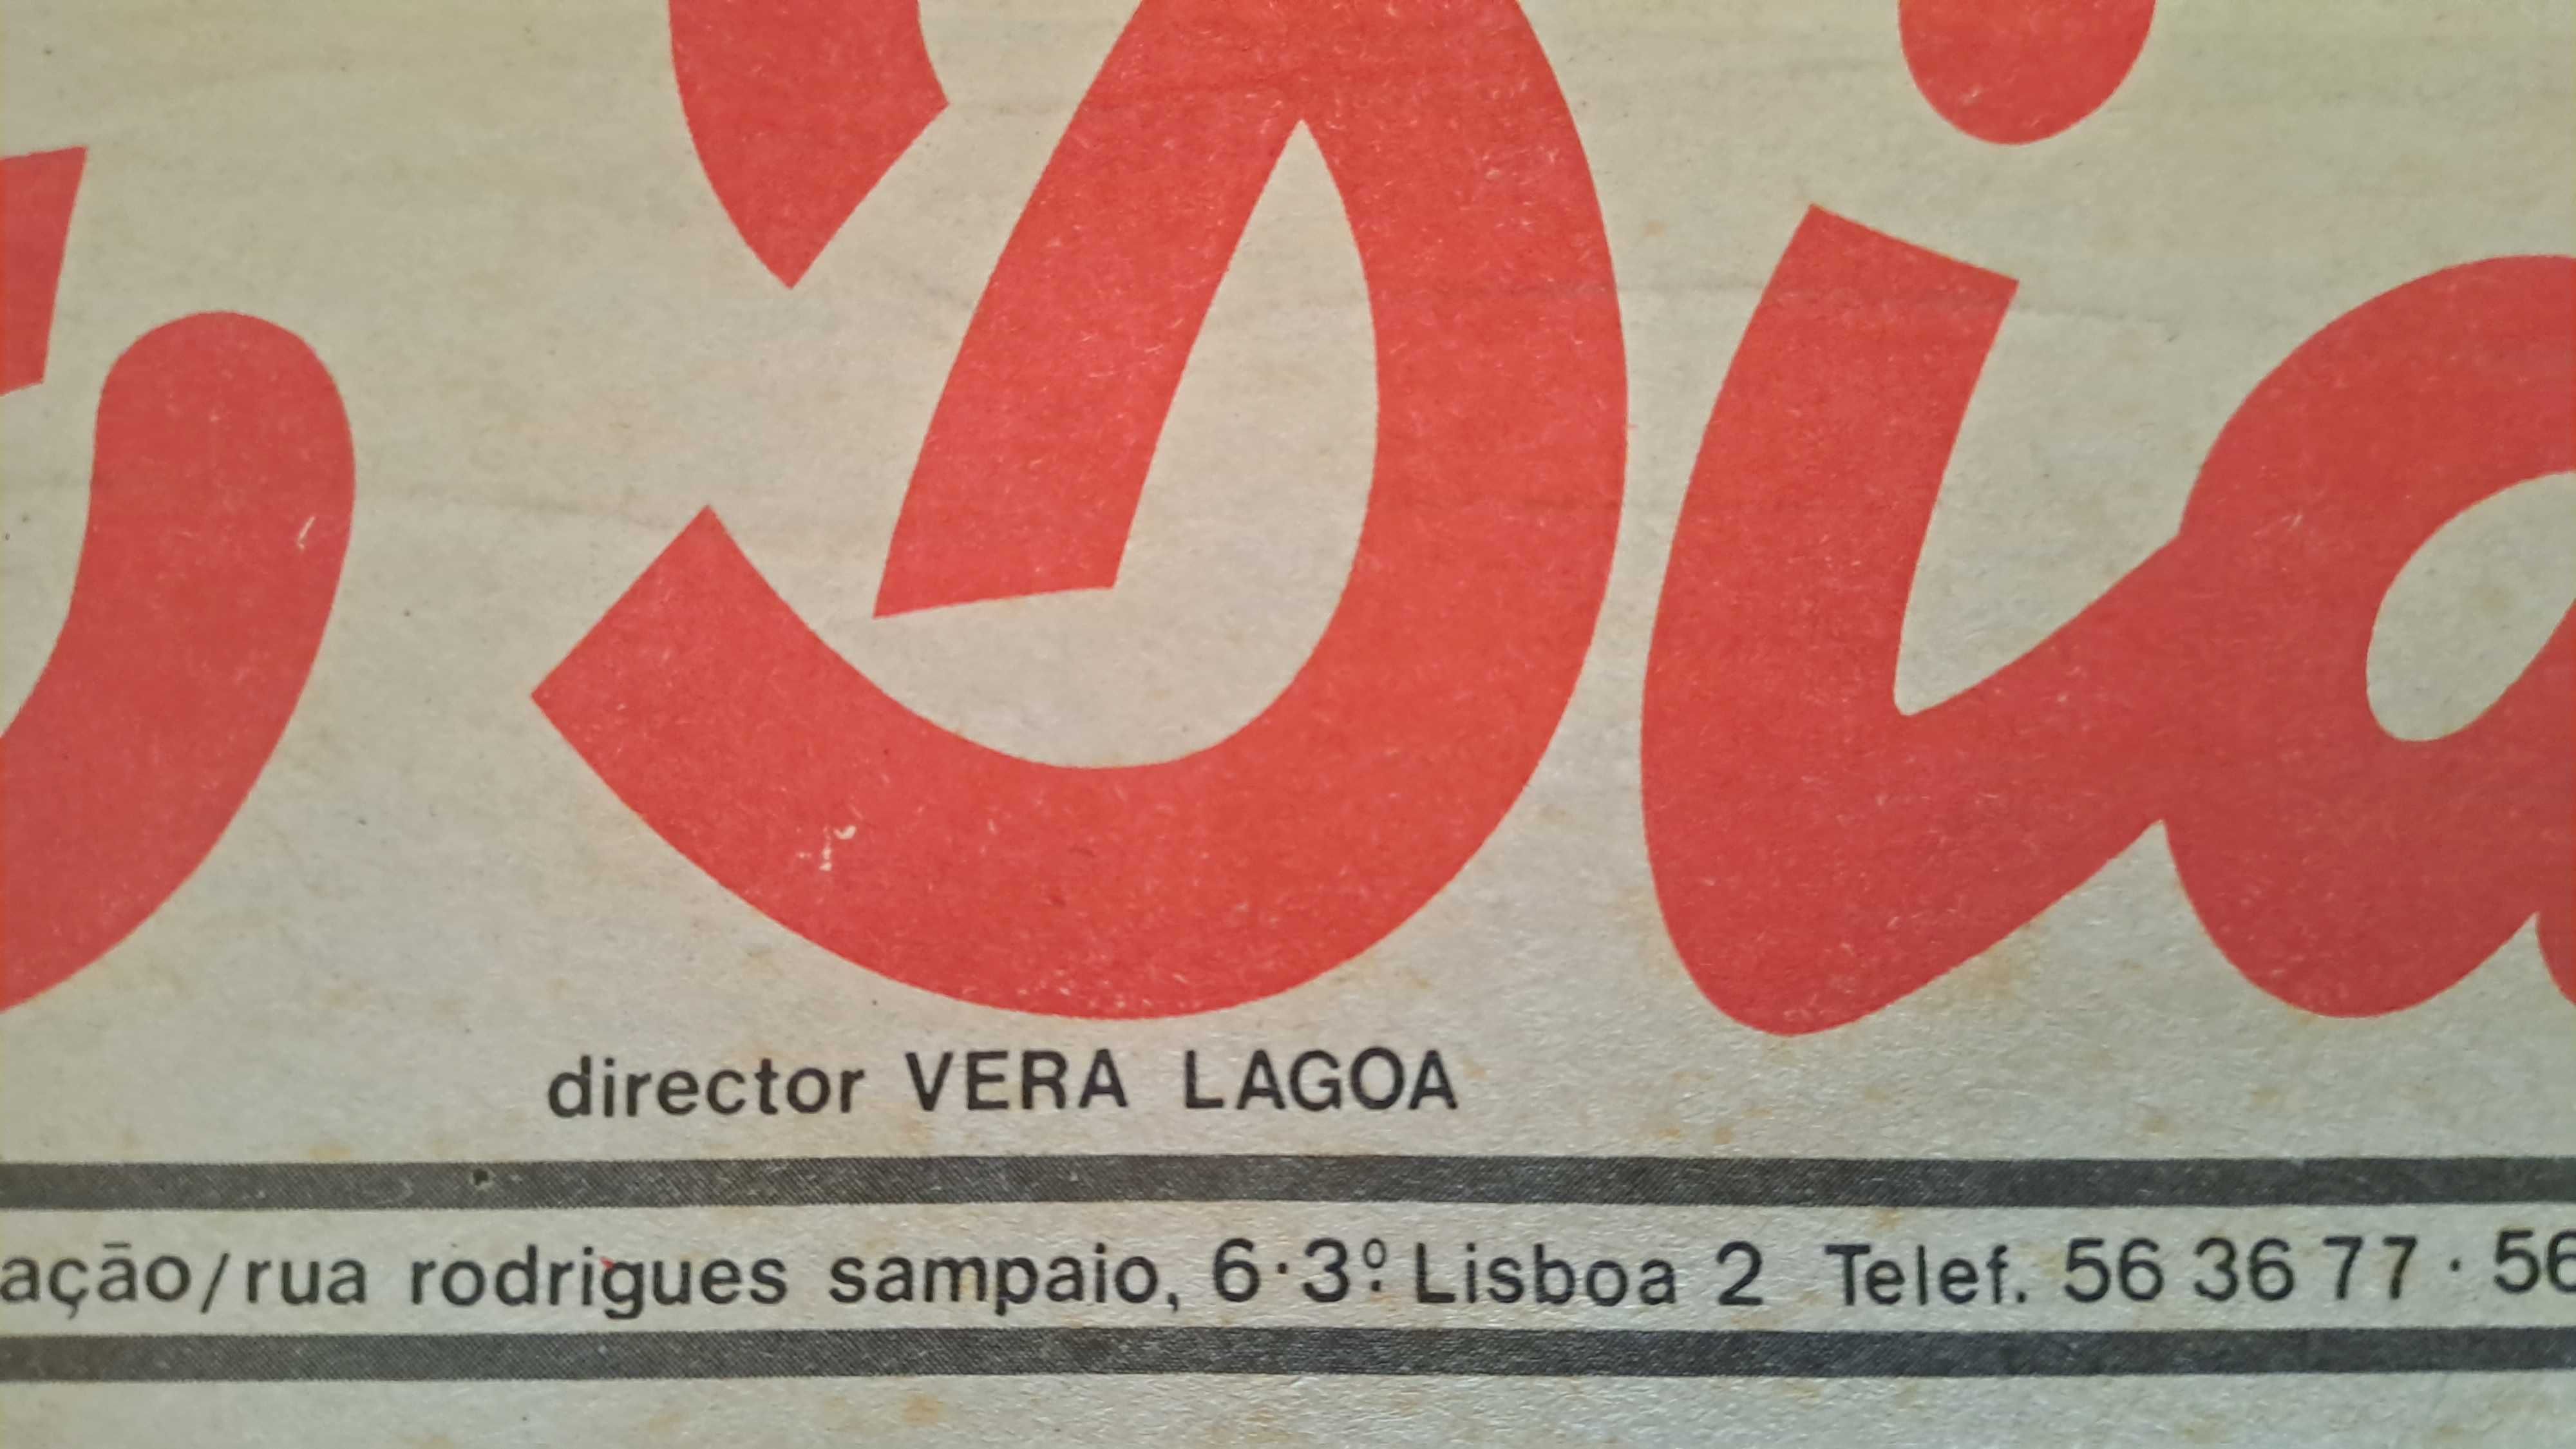 Jornal "O Diabo" de 10 Fev. 1976